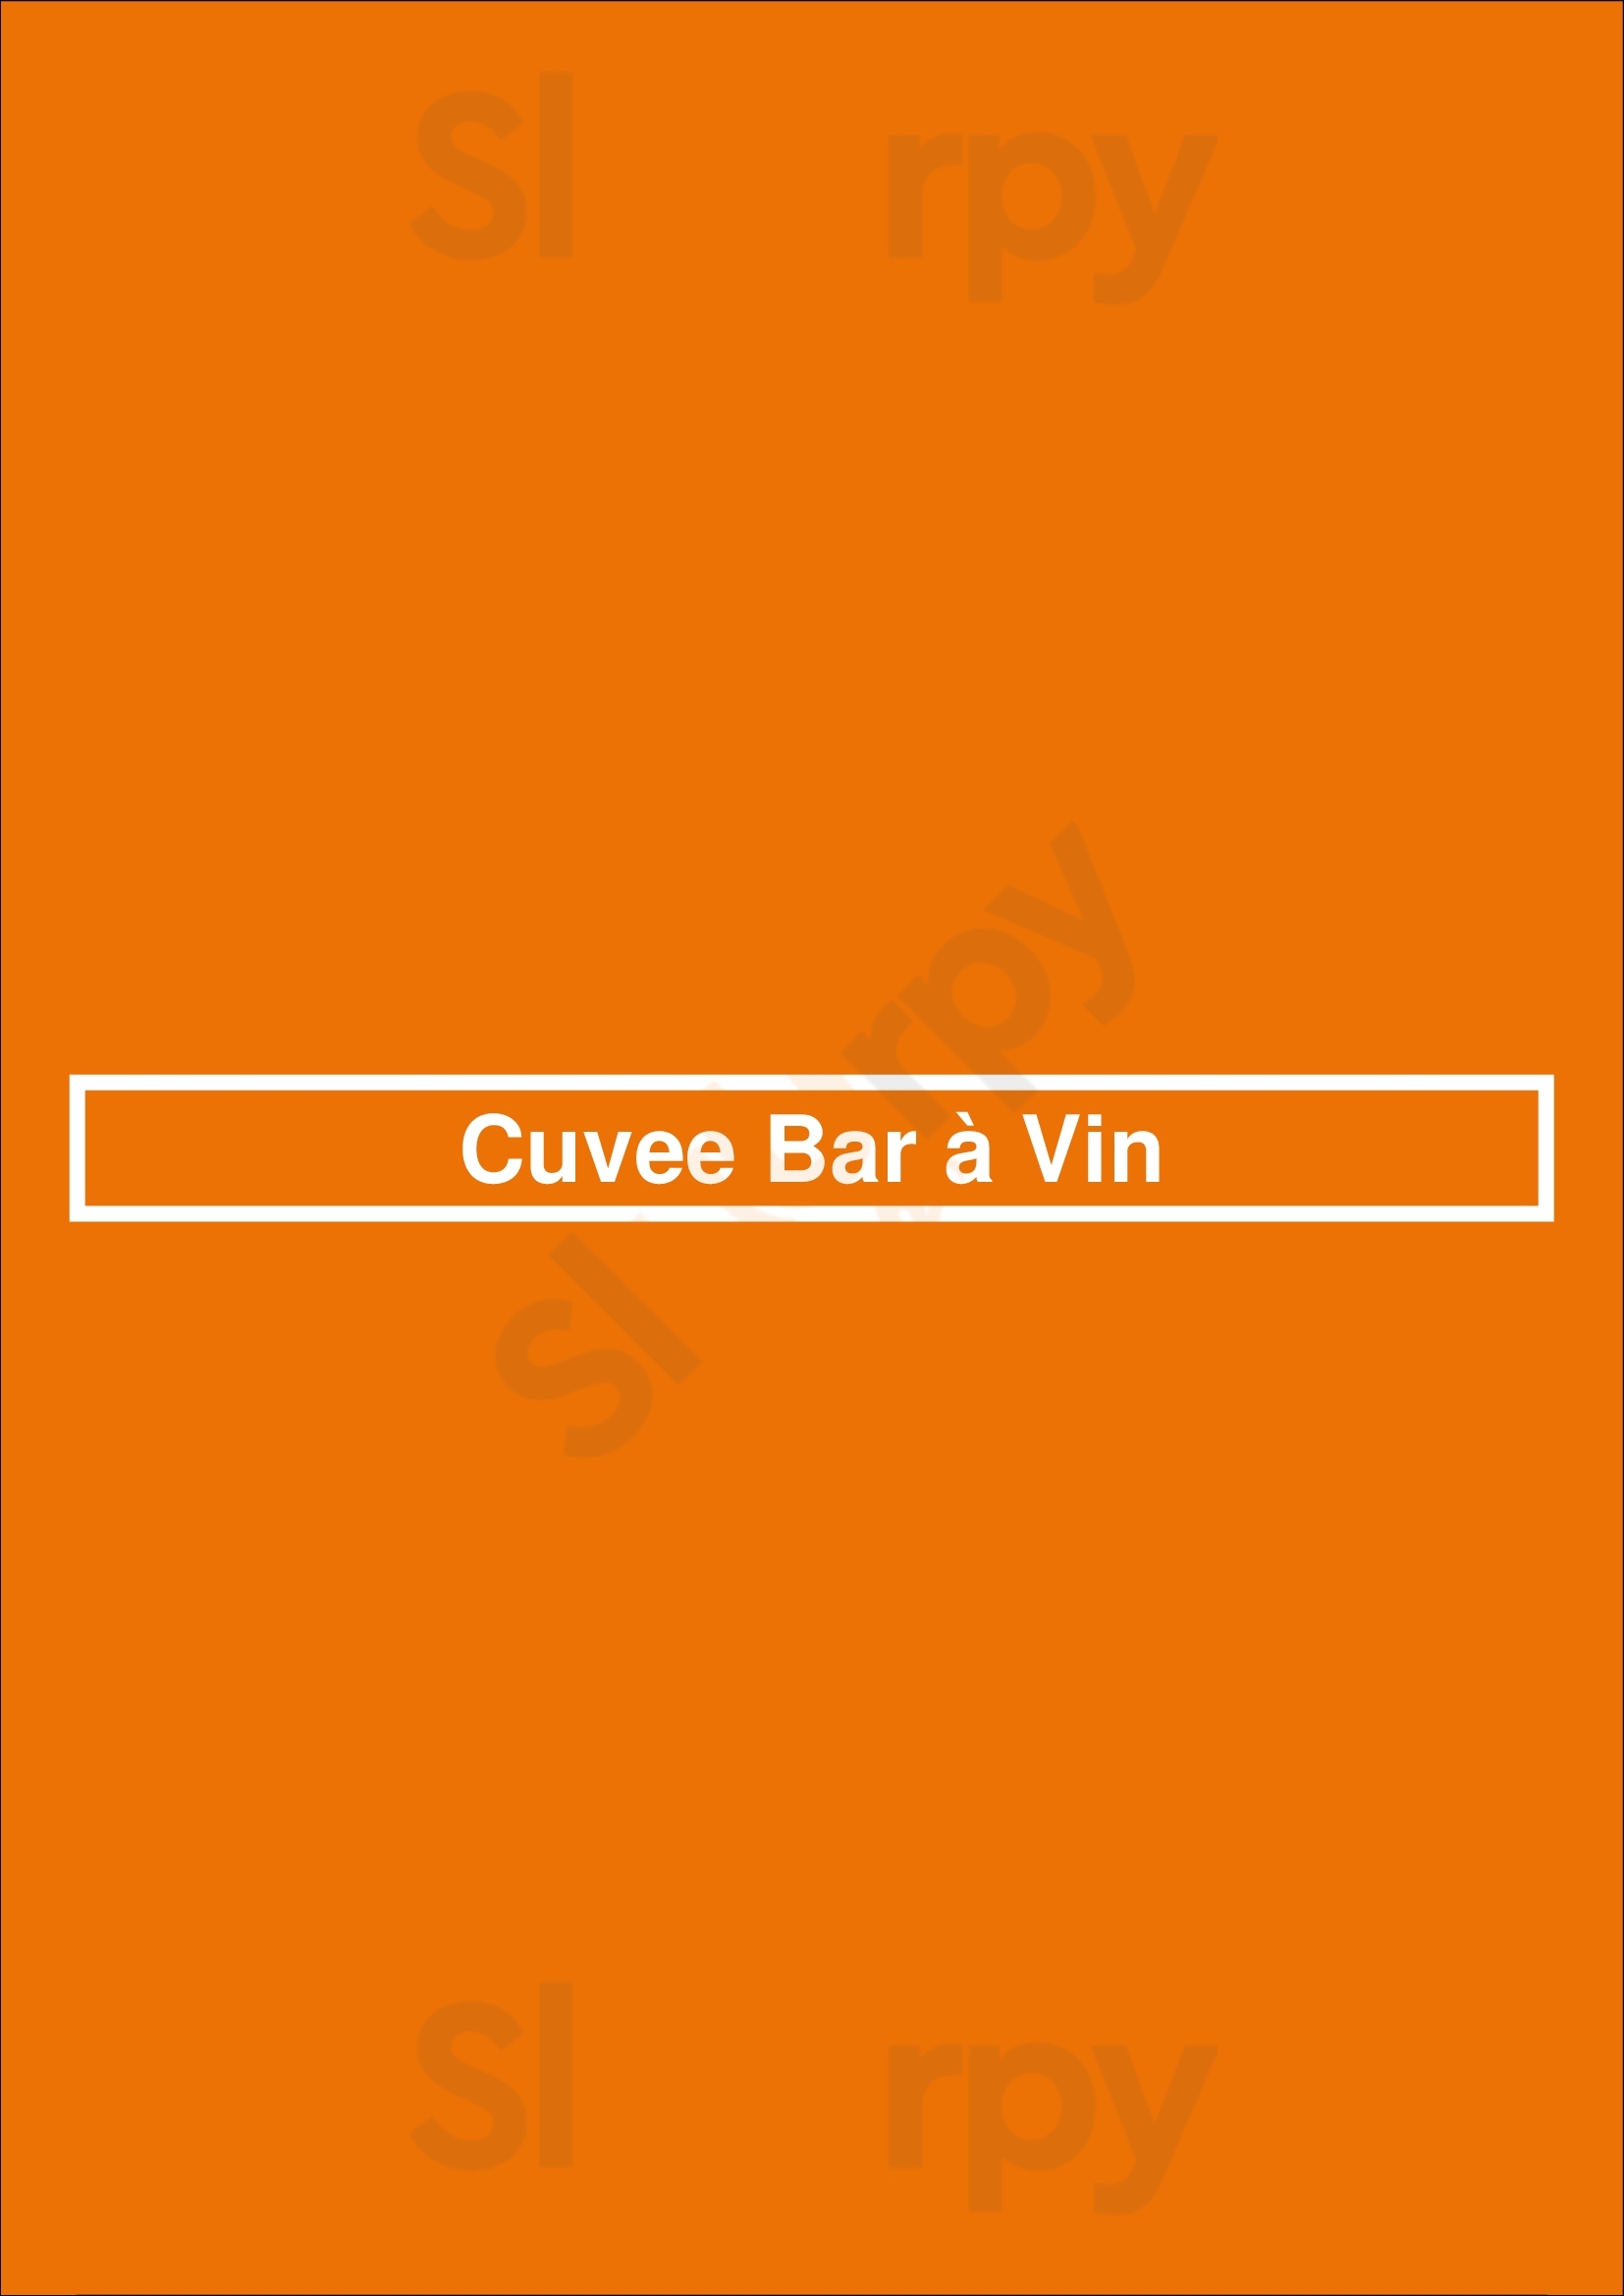 Cuvee Bar à Vin Bruges Menu - 1